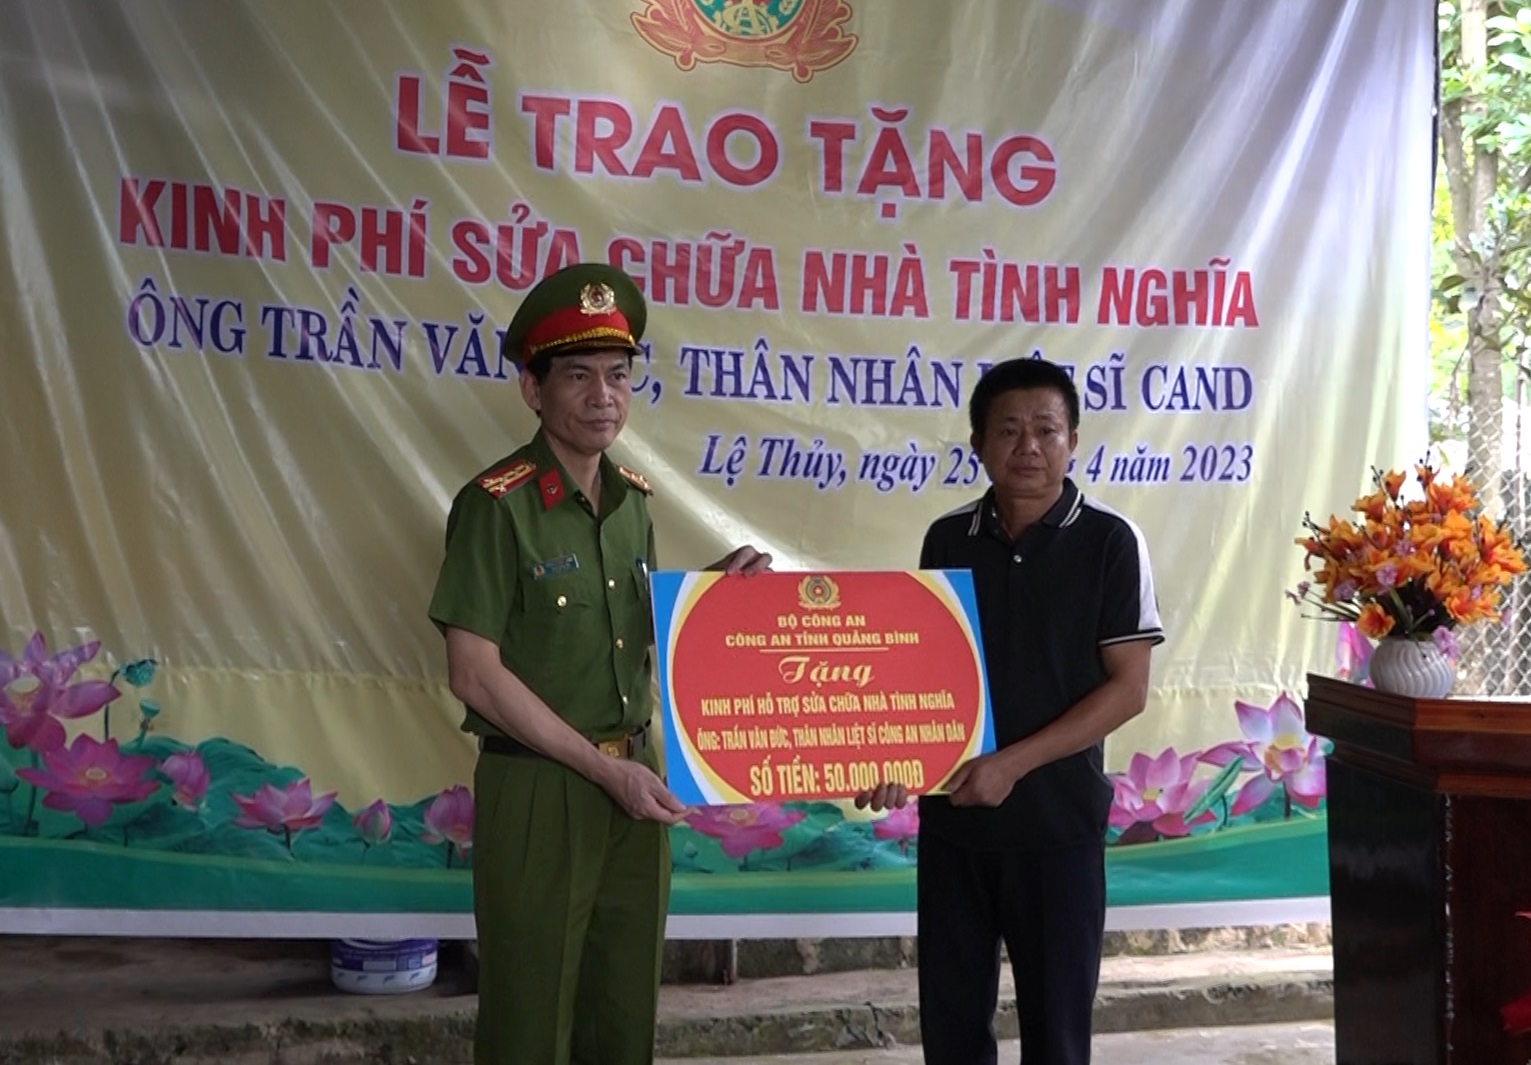 Đại tá Phan Đăng Tĩnh - Phó giám đốc Công an tỉnh trao kinh phí sửa chữa nhà tình nghĩa cho ông Trần Văn Đức.